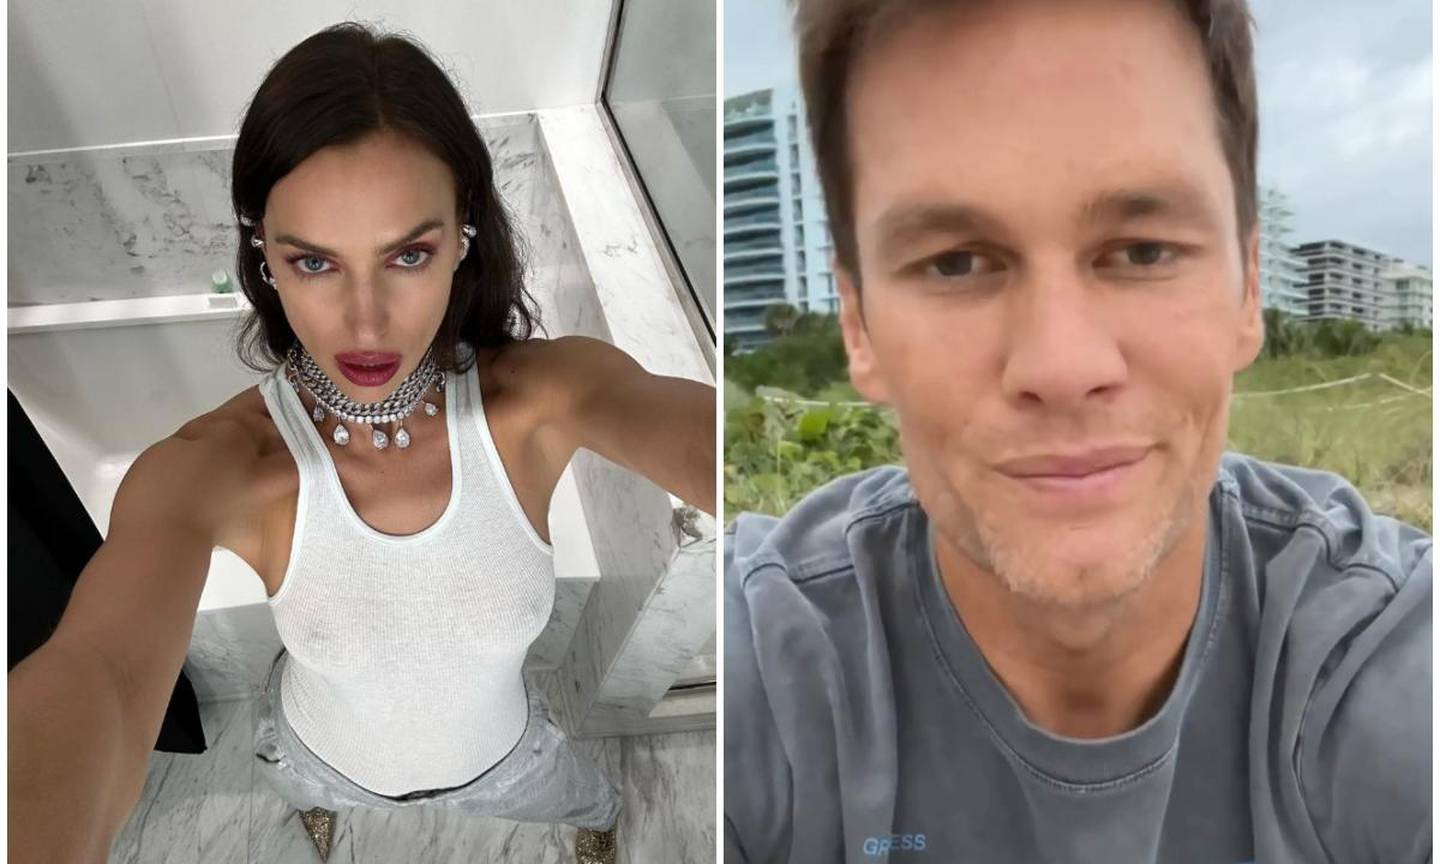 Tom Brady e Irina Shayk fueron vistos saliendo de un hotel en Londres. Con este encuentro, los rumores de una relación entre ambos toma fuerza